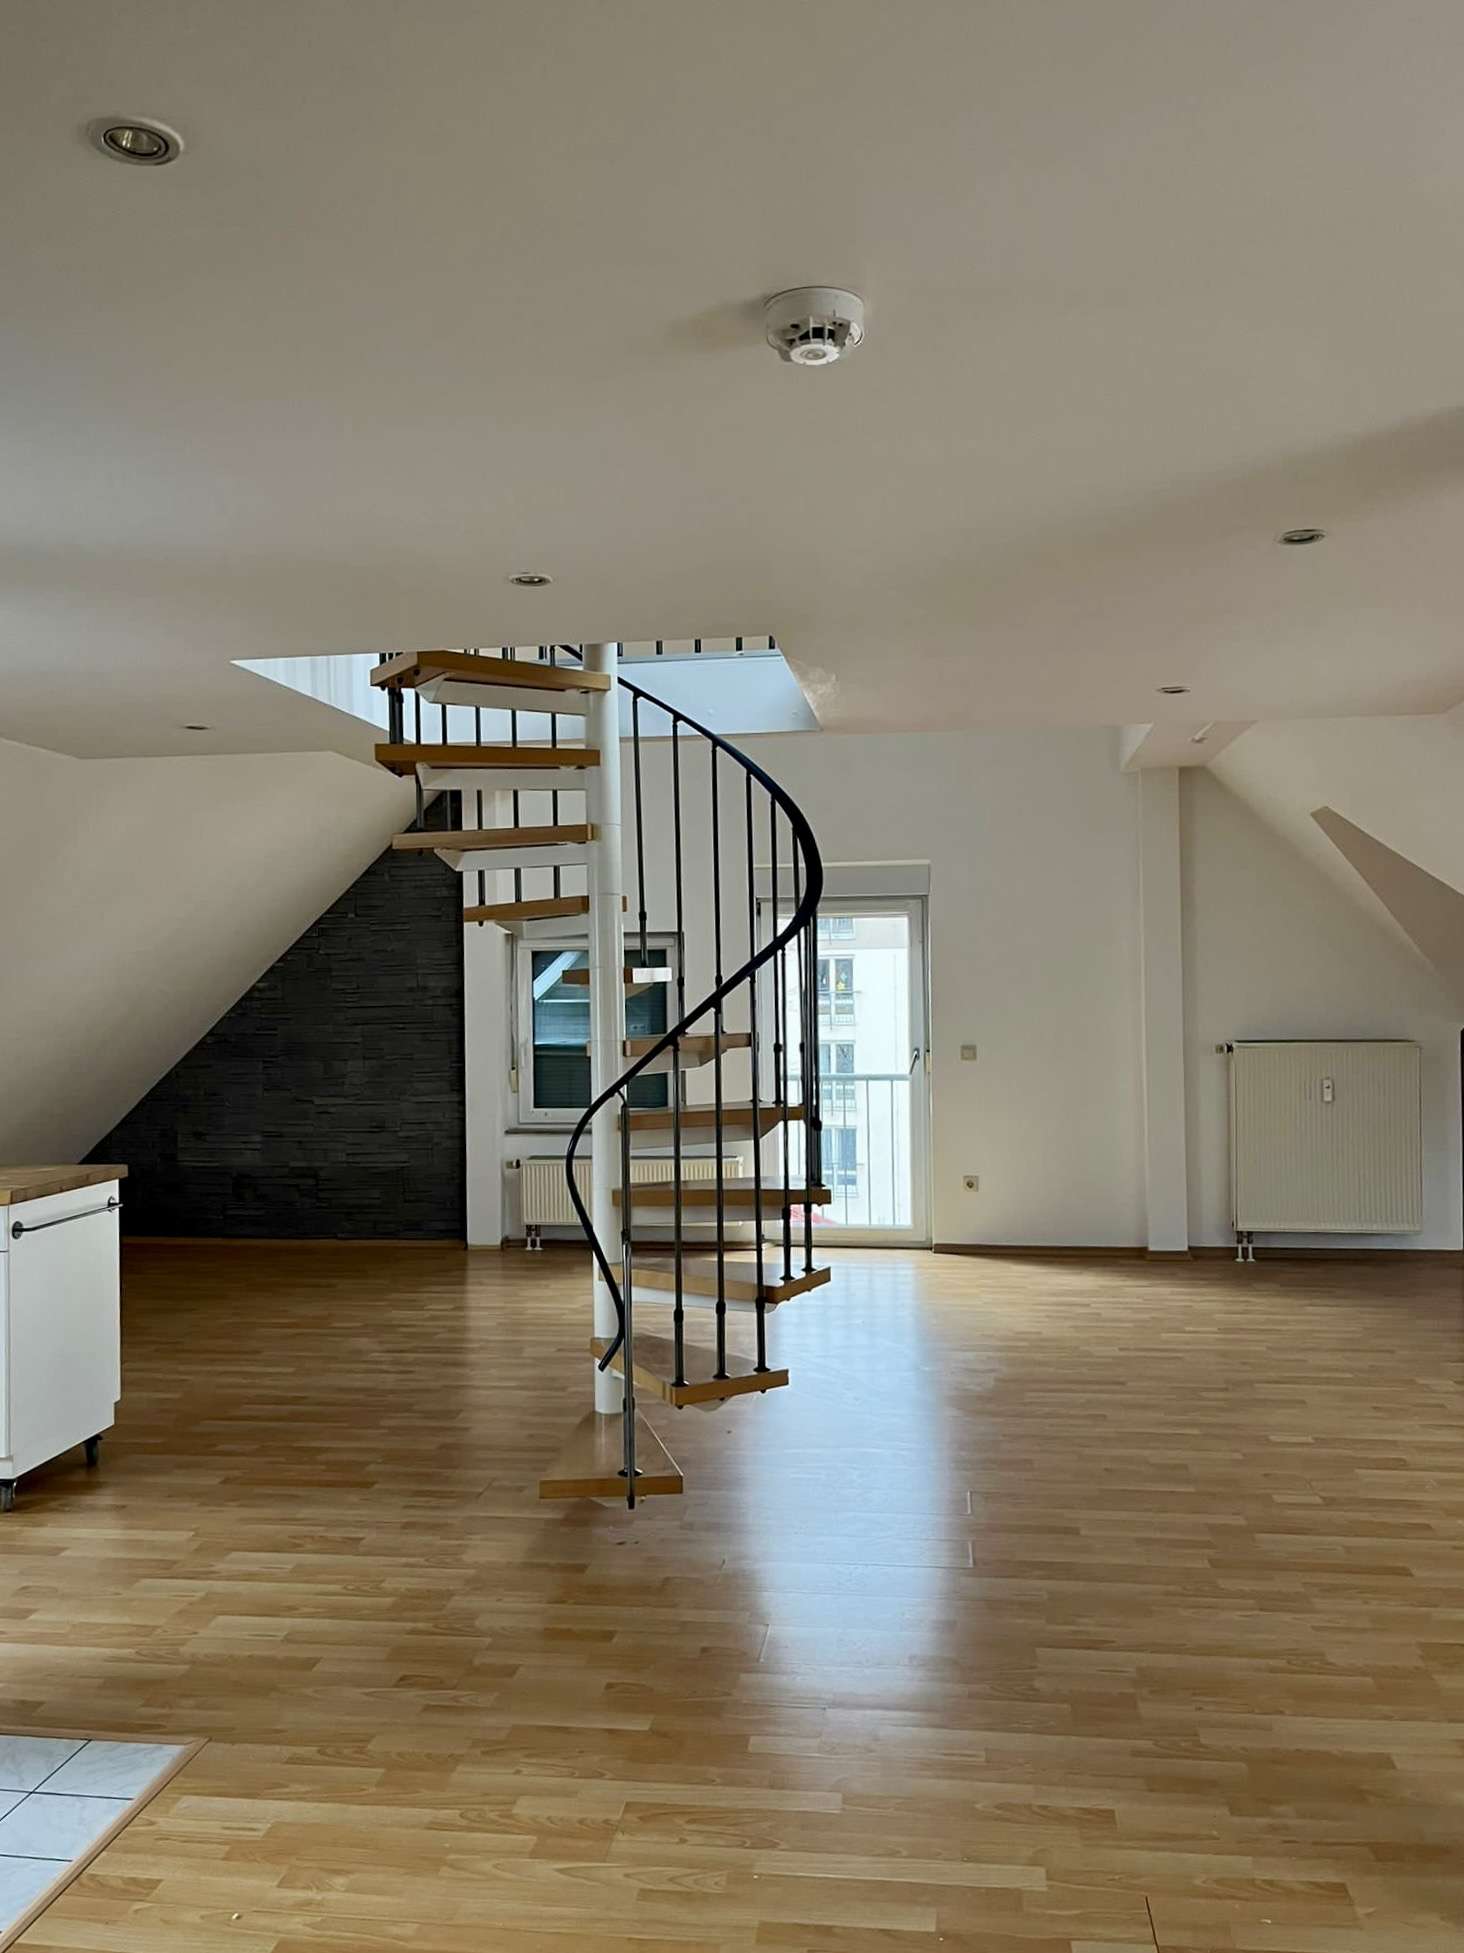 Wohnung zum Mieten in Augsburg 895,00 € 90 m²